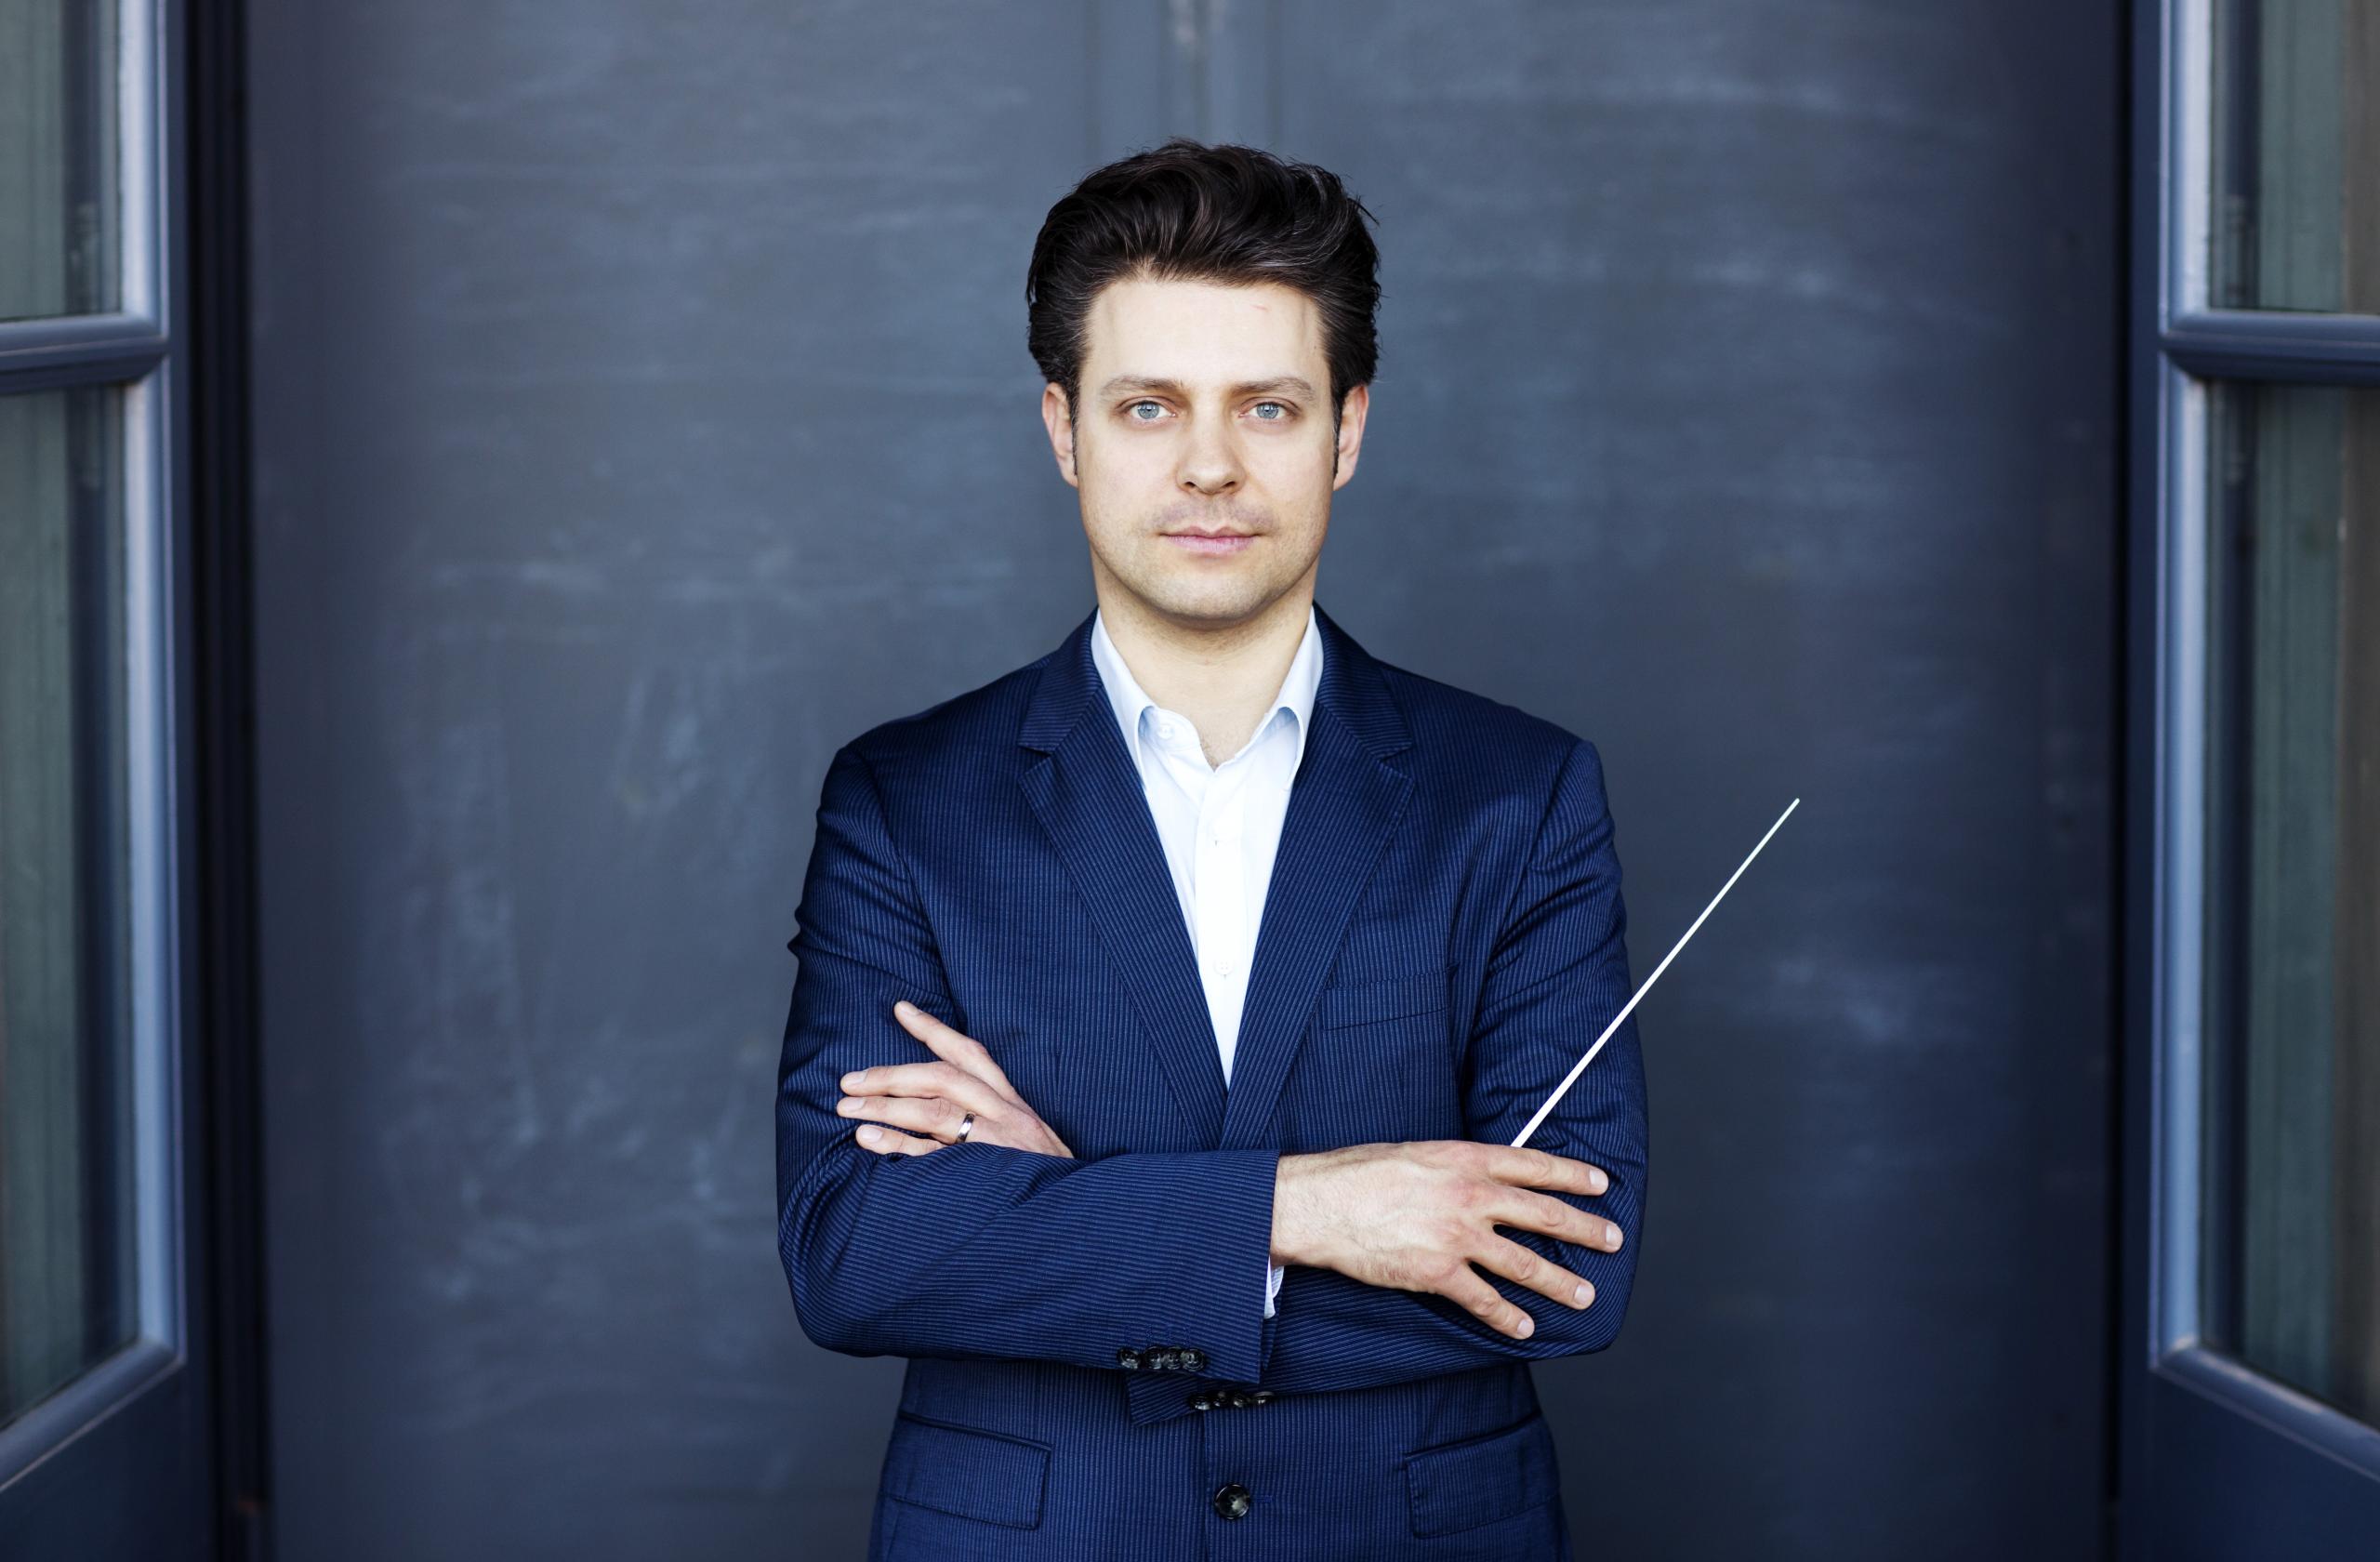 Porträt des Dirigenten Joseph Bastian. Er trägt ein dunkelblaues Sakko und ist vor einem grauen Hintergrund abgebildet.